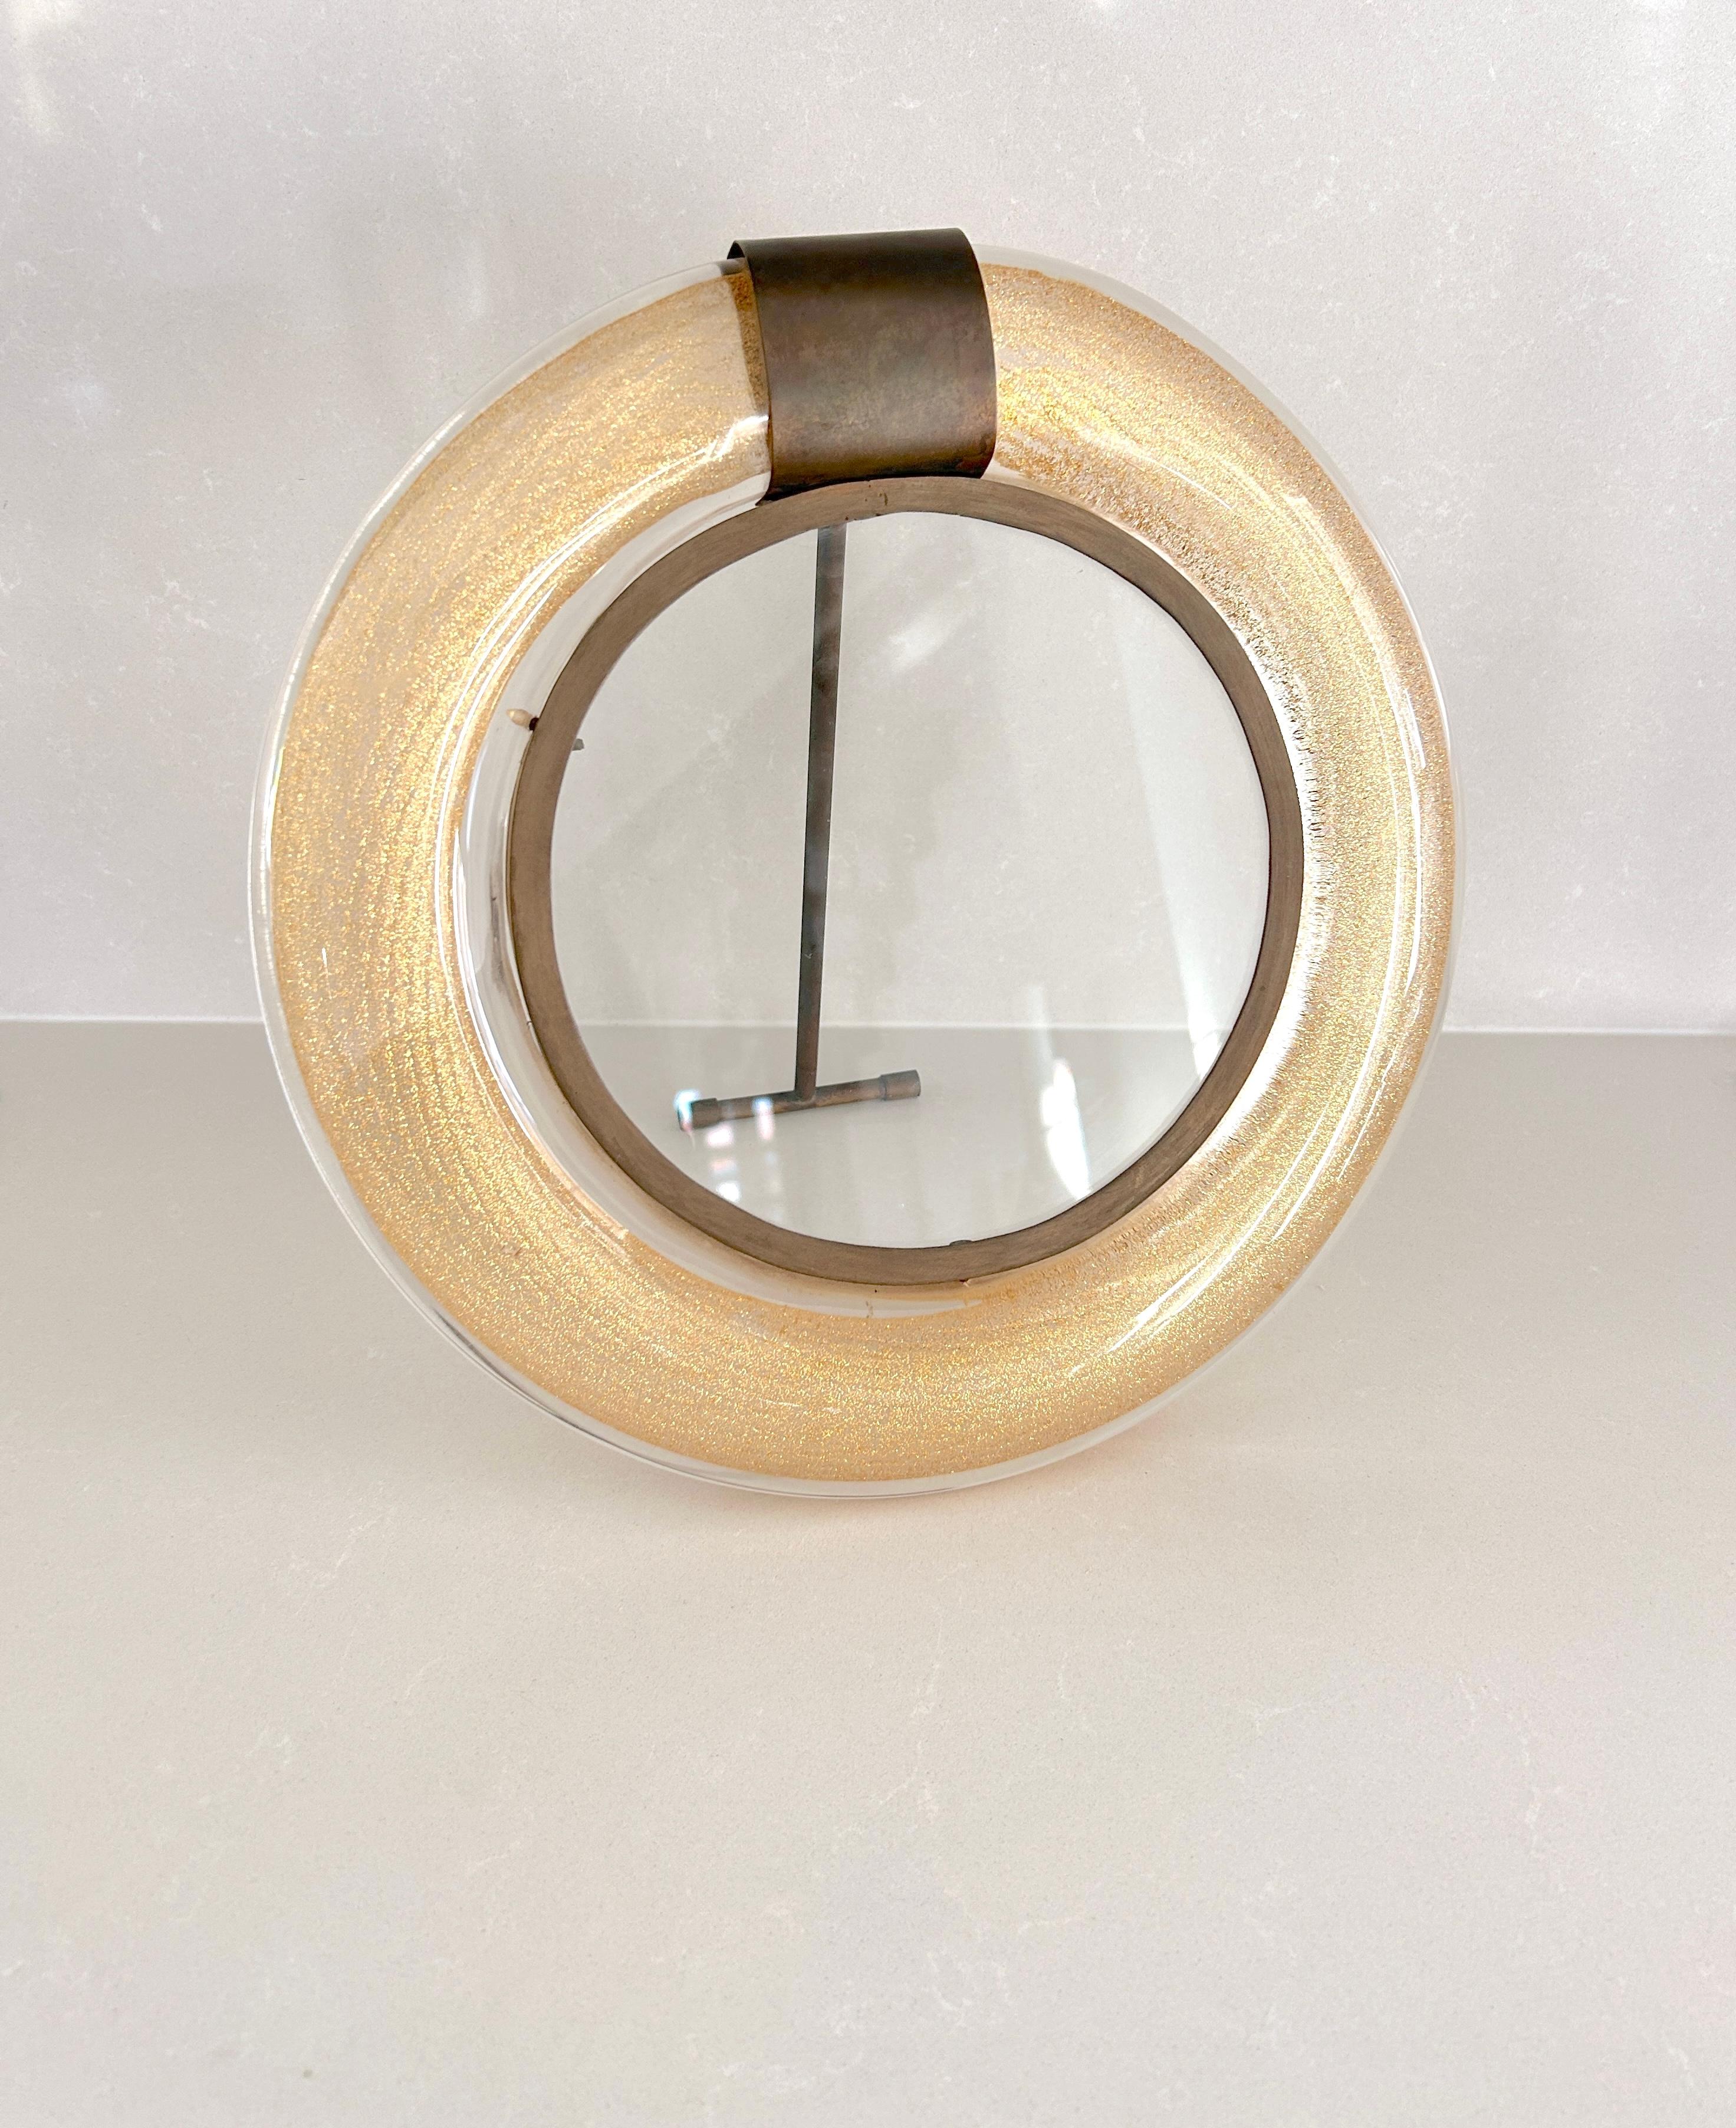 Schöner und kostbarer Rahmen aus Muranoglas, Seguso, 1950er Jahre
Glasrahmen mit Blattgoldeinsätzen.
Rahmen und Details aus Messing